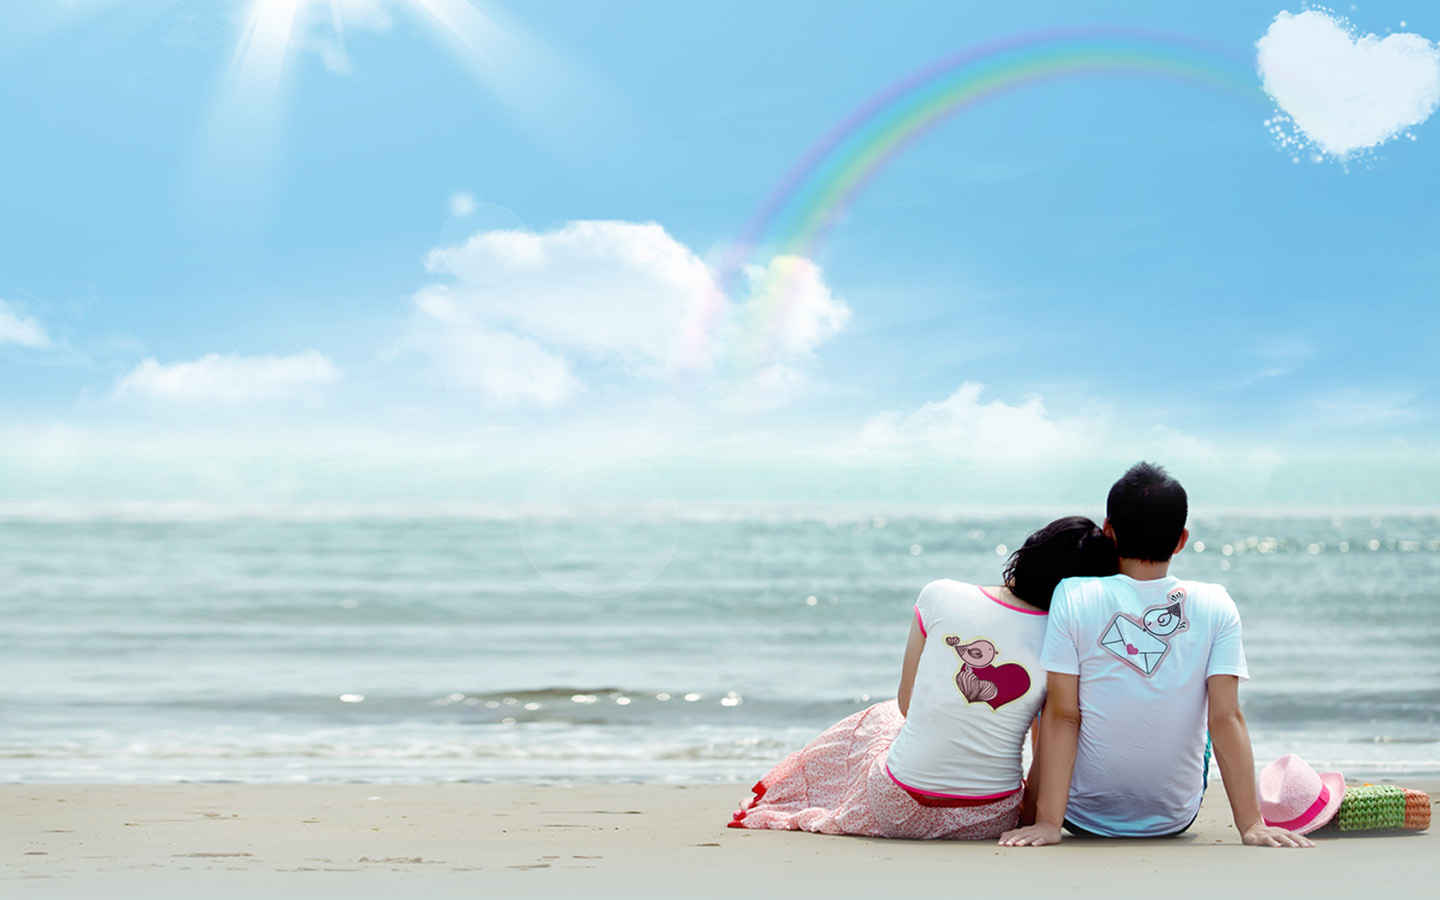 情侣海边沙滩爱心图片,两个人一起看海的图片 - 伤感说说吧